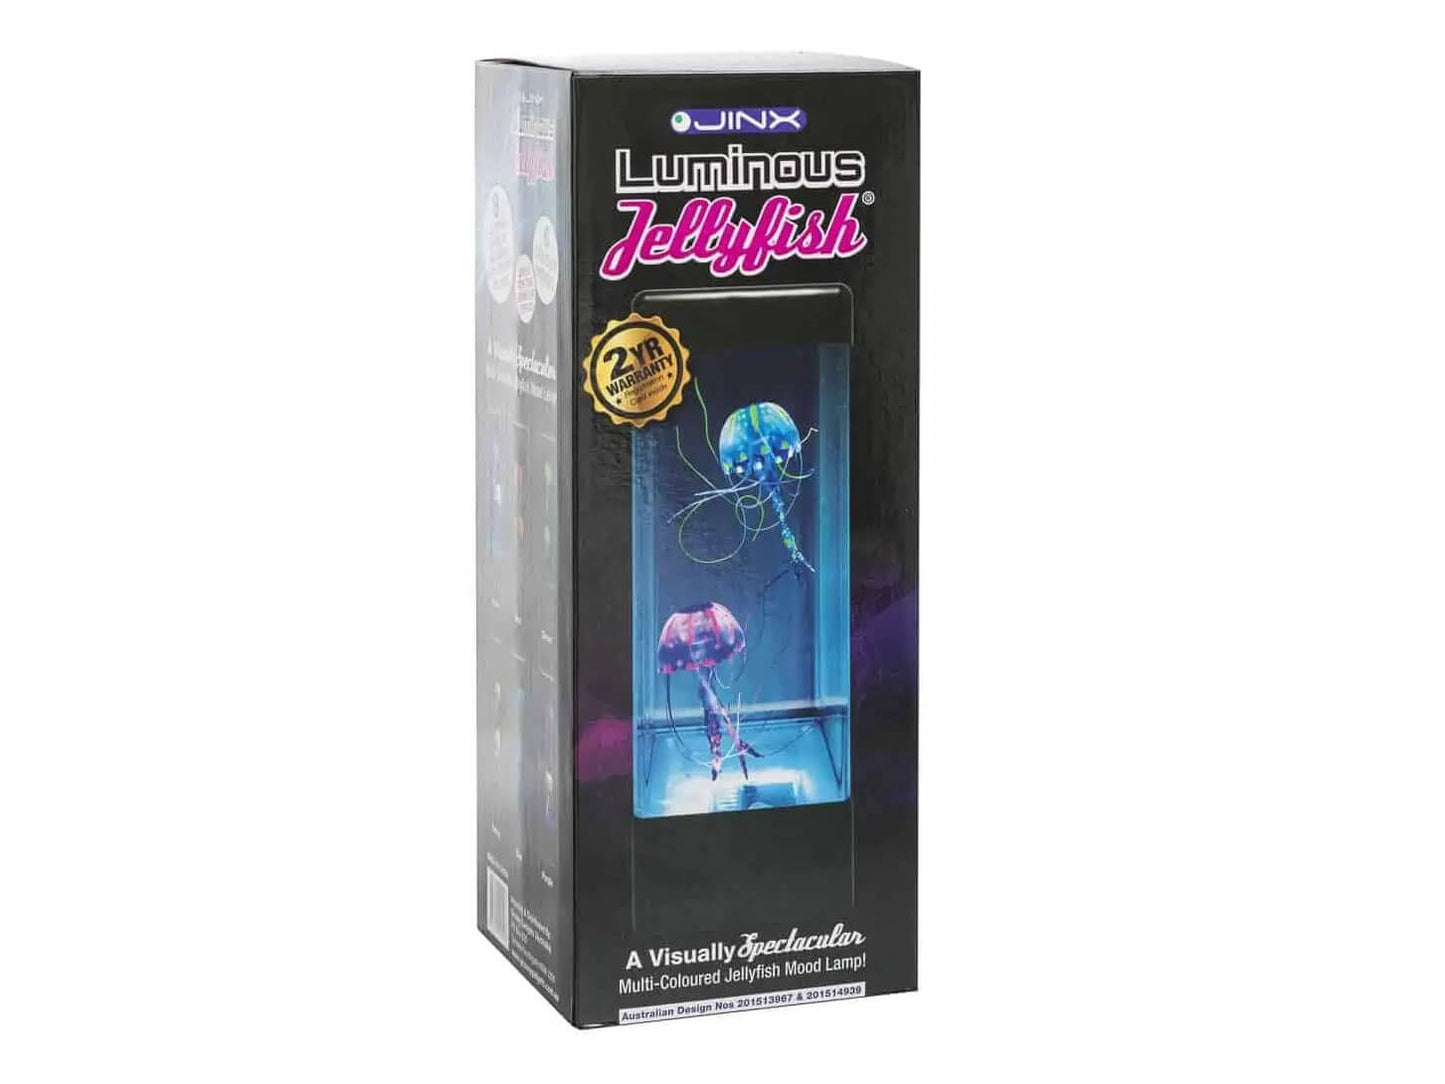 Jinx Jellyfish lamp in box